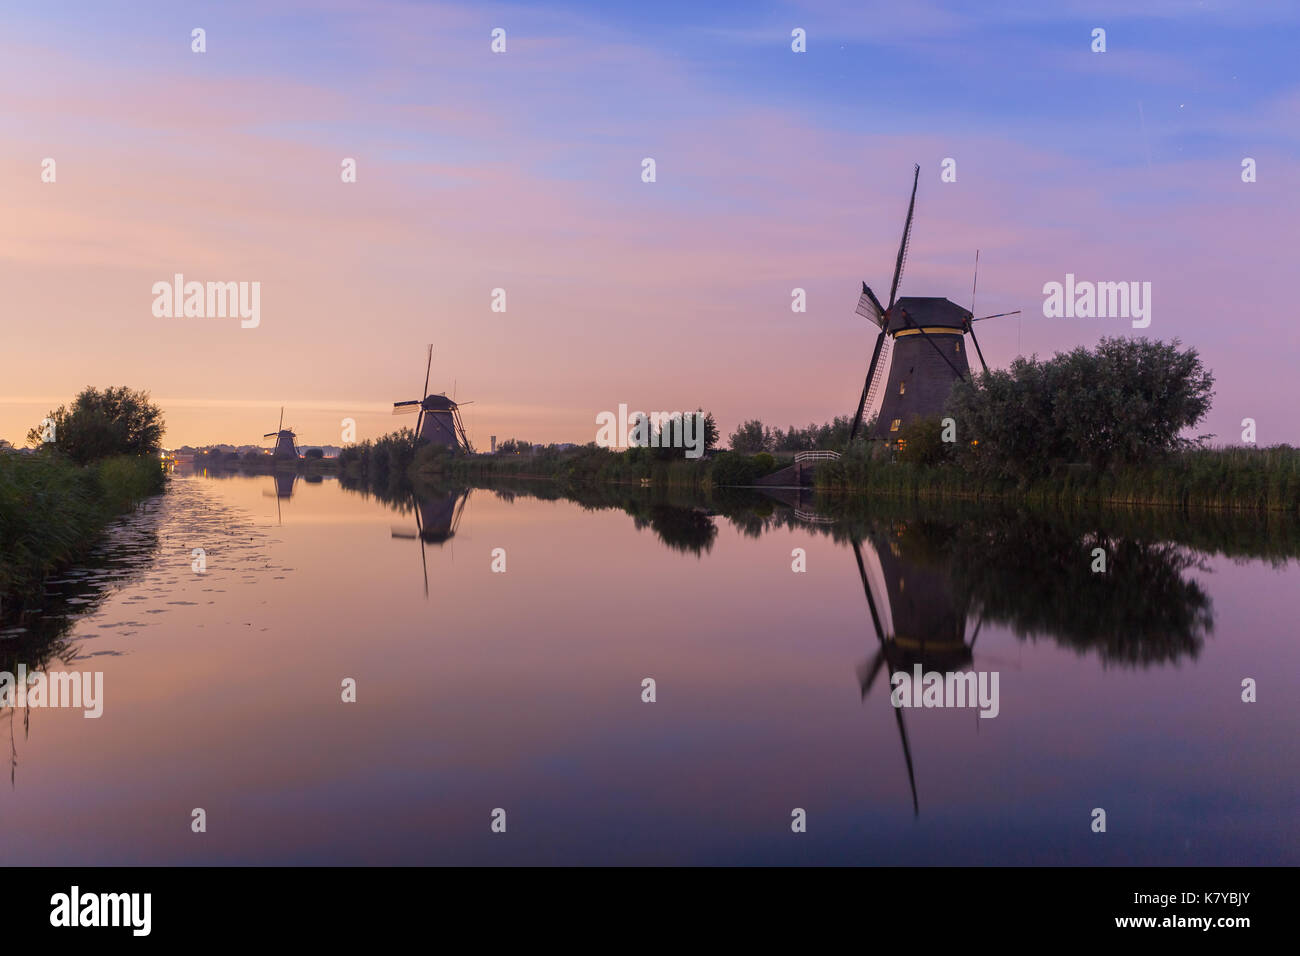 Die Windmühlen von Kinderdijk, ein Weltkulturerbe der UNESCO, an der Wasserseite bei Sonnenuntergang gesäumt. Neben Windmühlen, die Seite zeigt verschiedene andere 57,96 Stockfoto